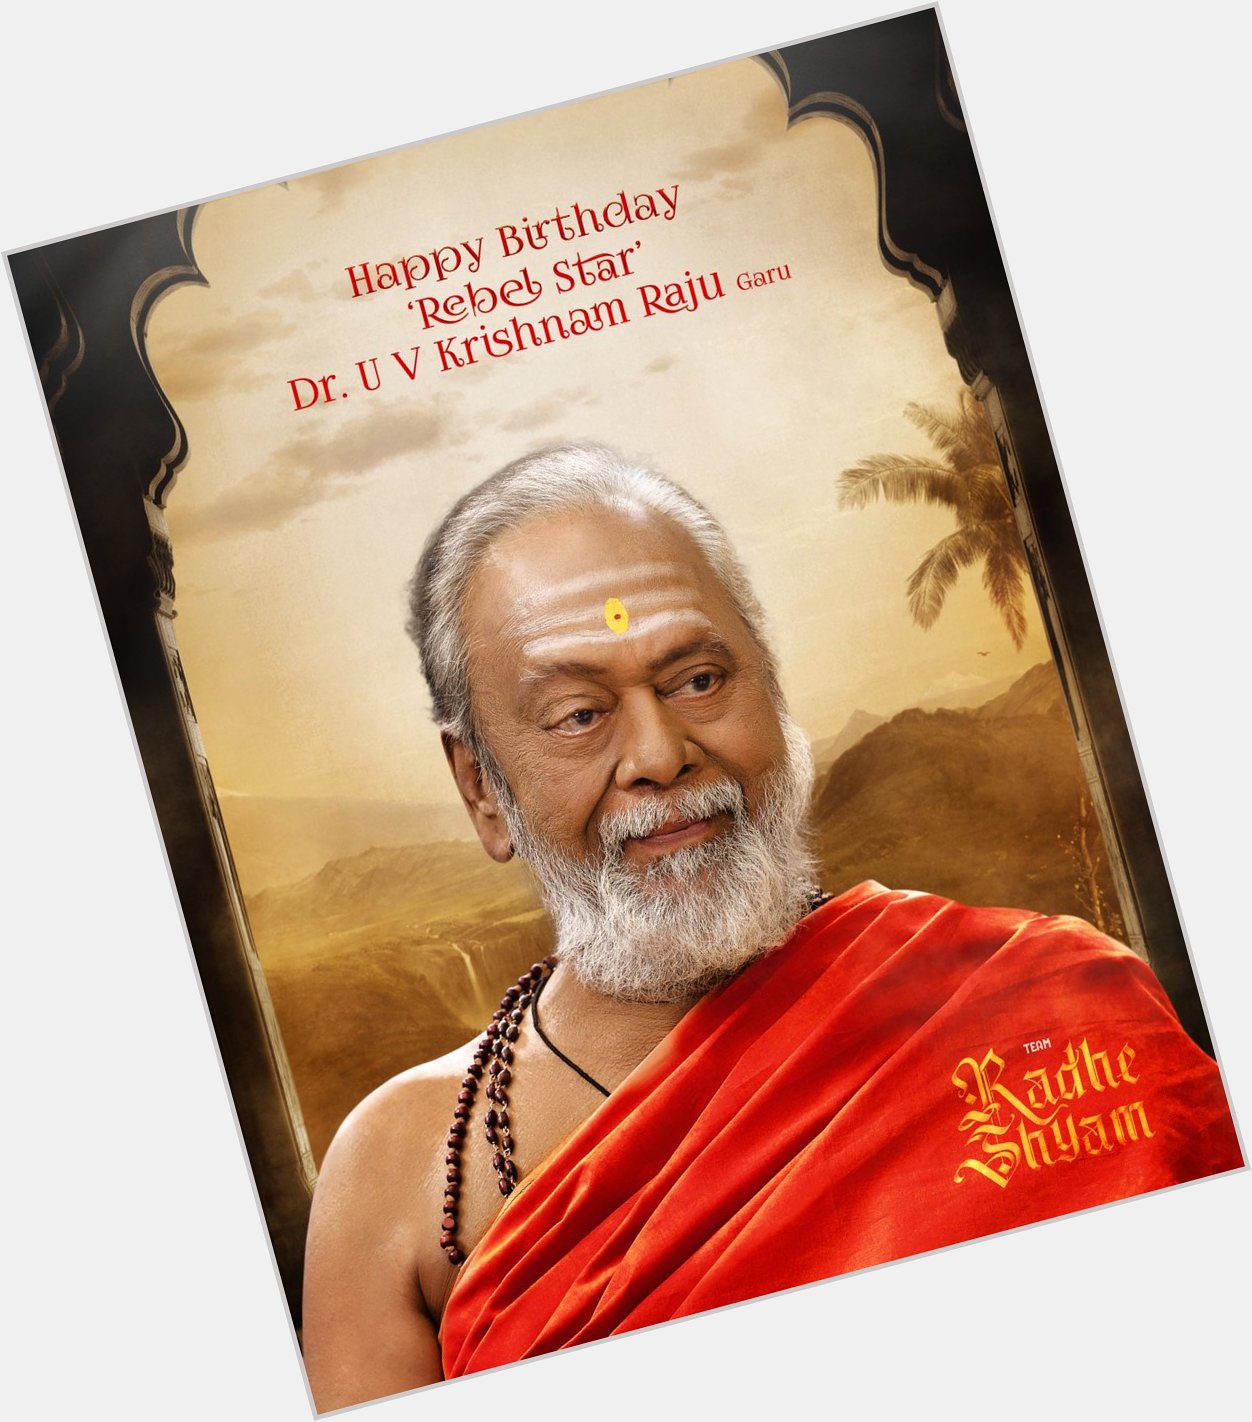  Happy Birthday rebal star krishnam raju garu    